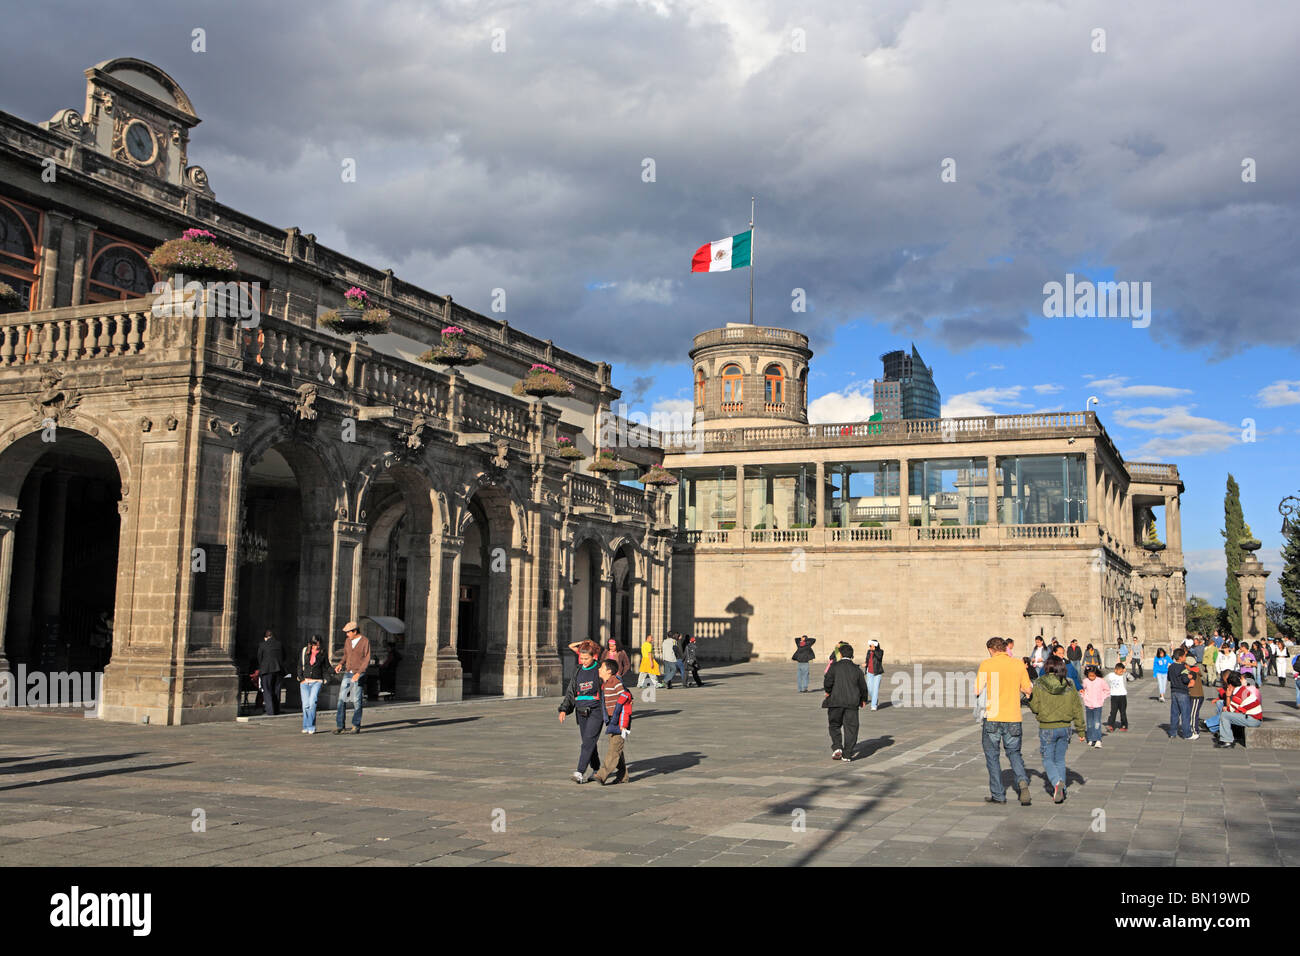 Chapultepec castle, Mexico City, Mexico Stock Photo